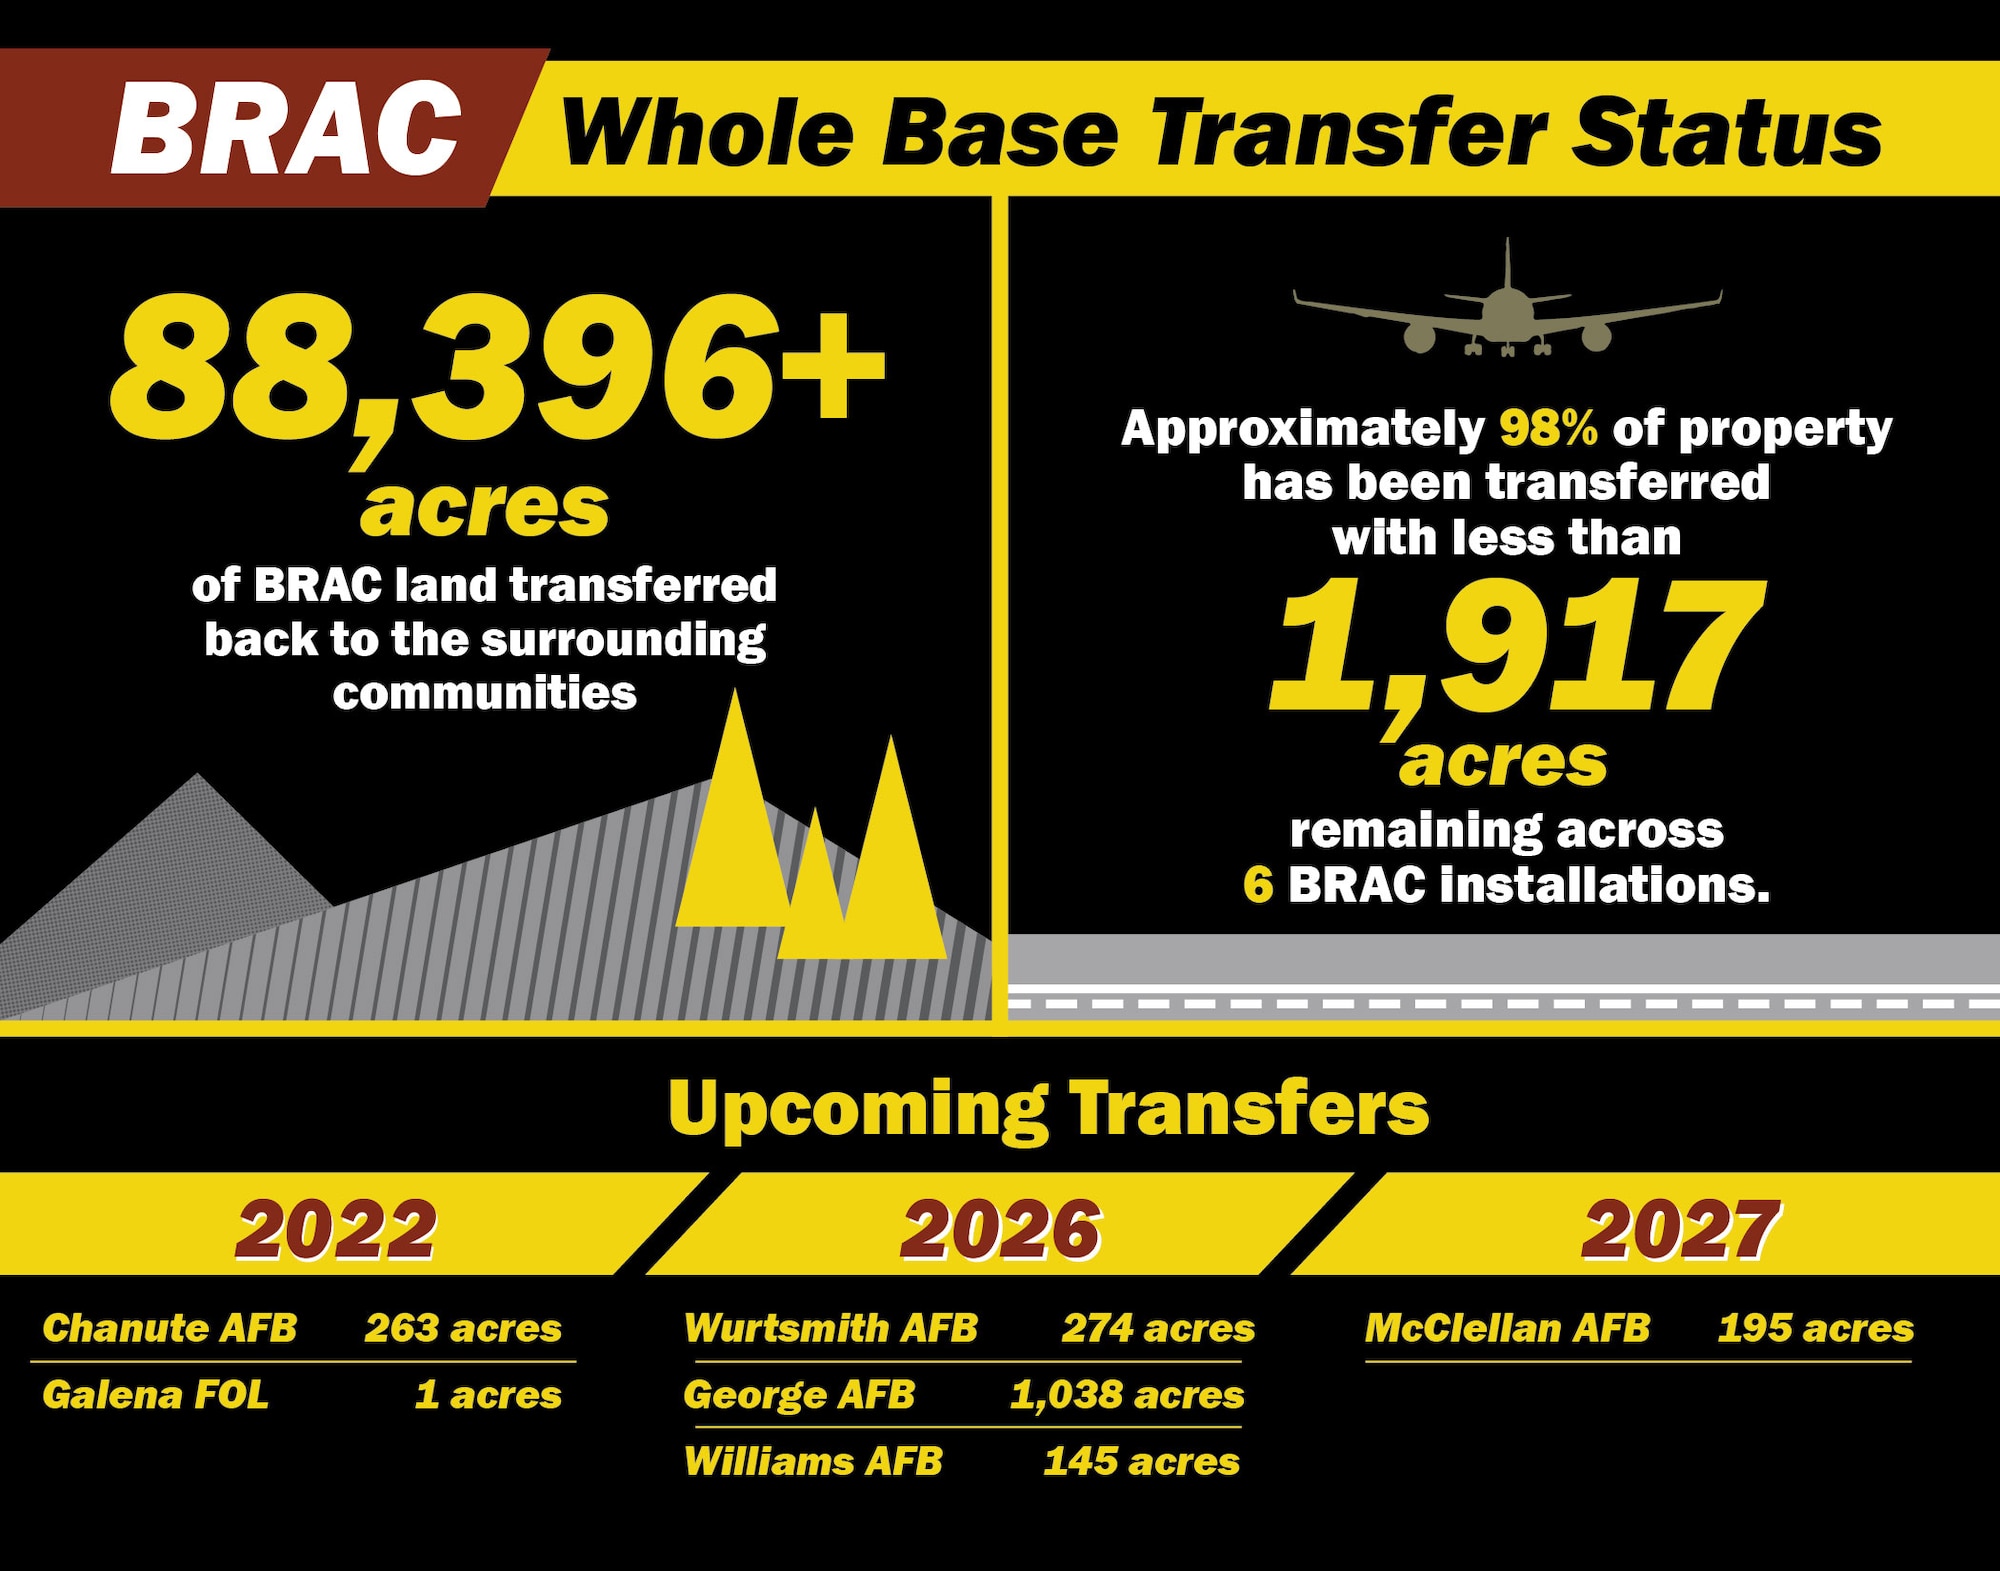 BRAC whole base transfer summary